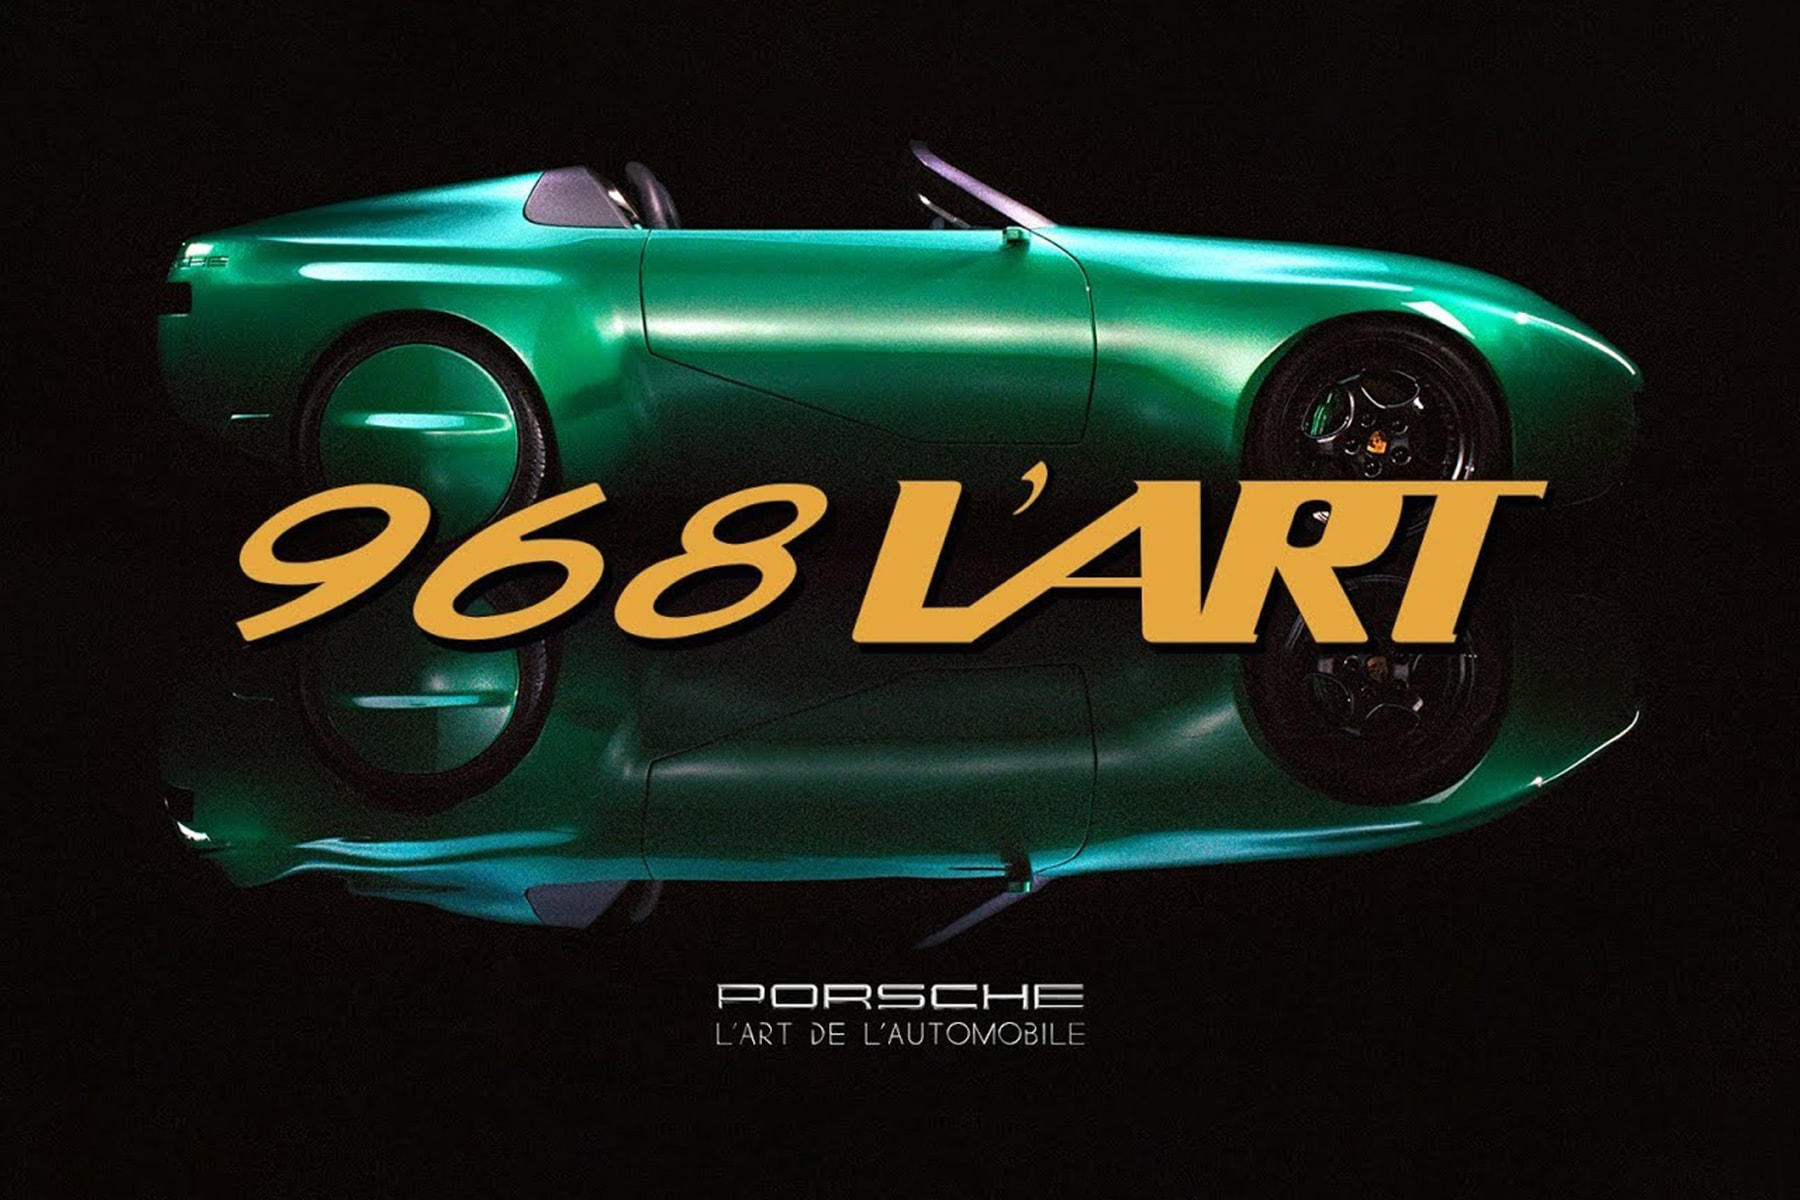 L'Art de l'Automobile 攜手 Porsche 打造全新 968 L’ART 別注車款